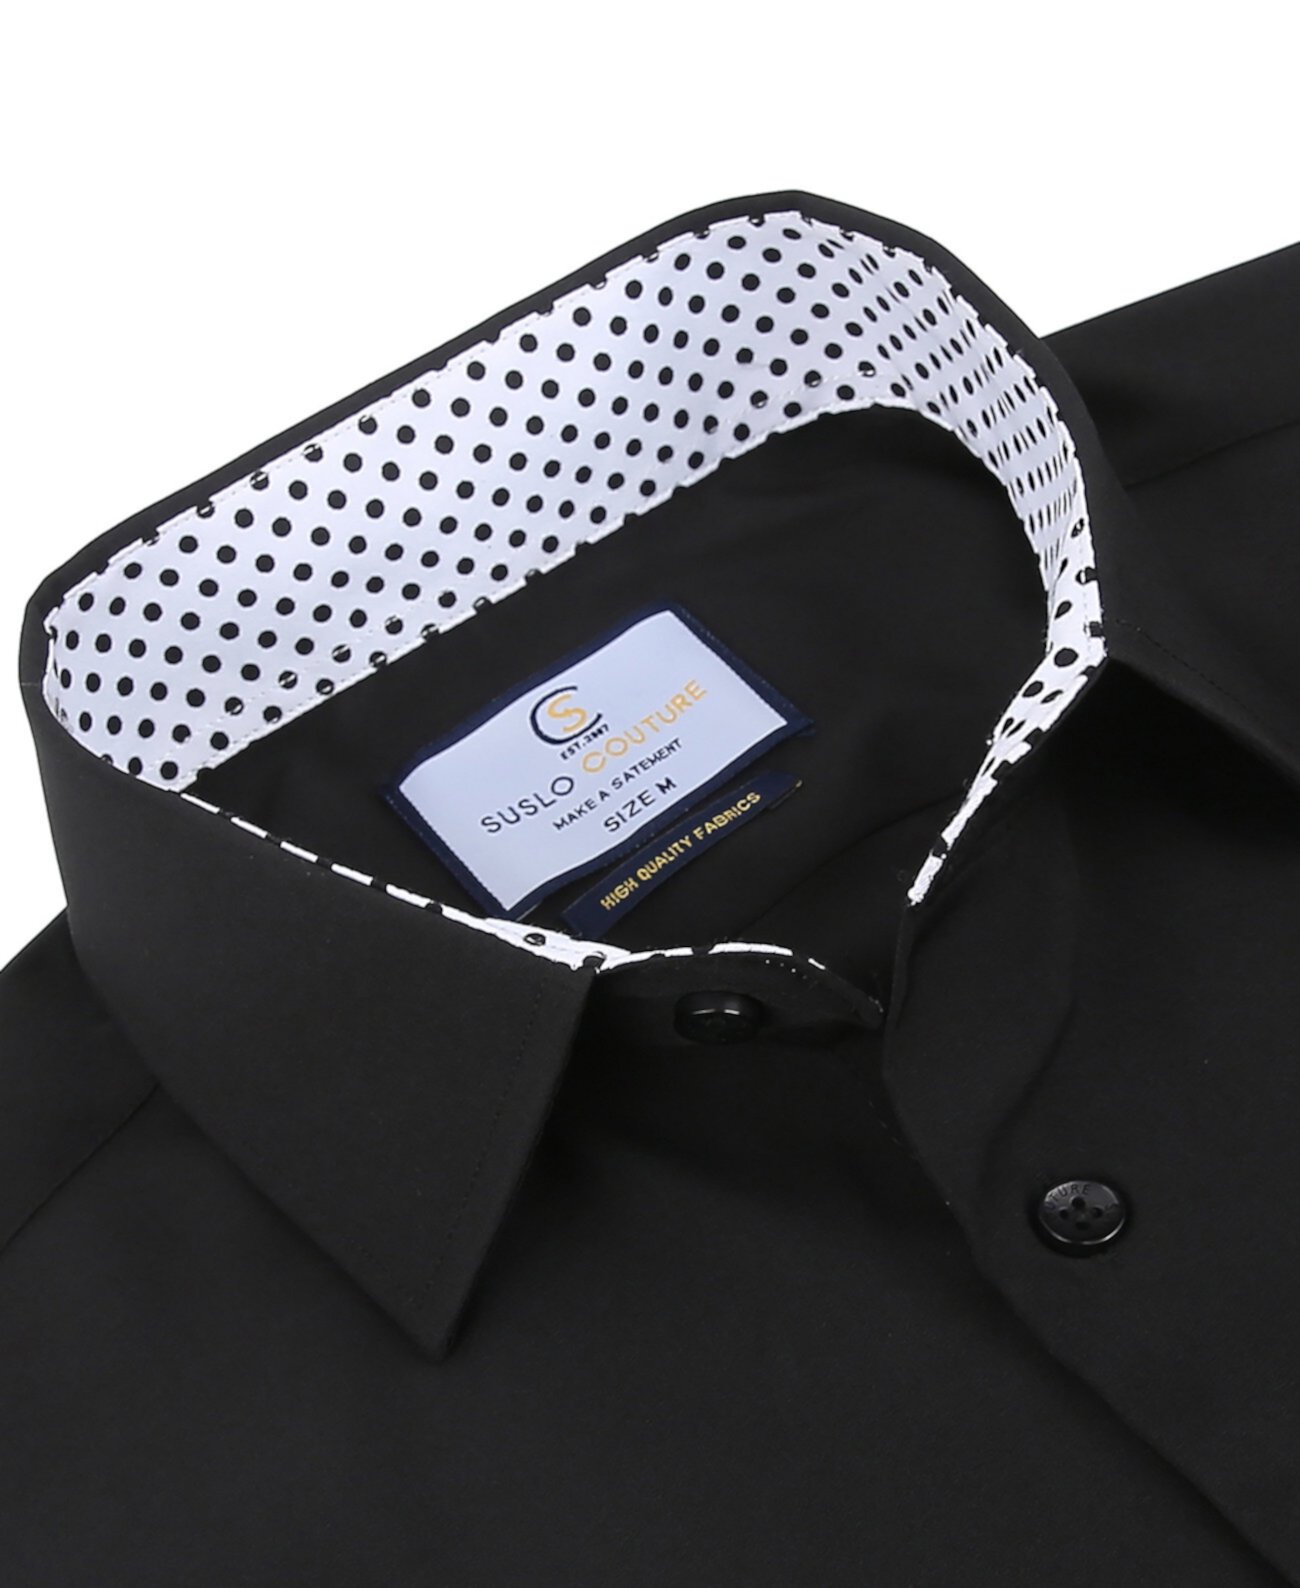 Мужская приталенная рубашка с короткими рукавами и однотонной рубашкой на пуговицах Suslo Couture